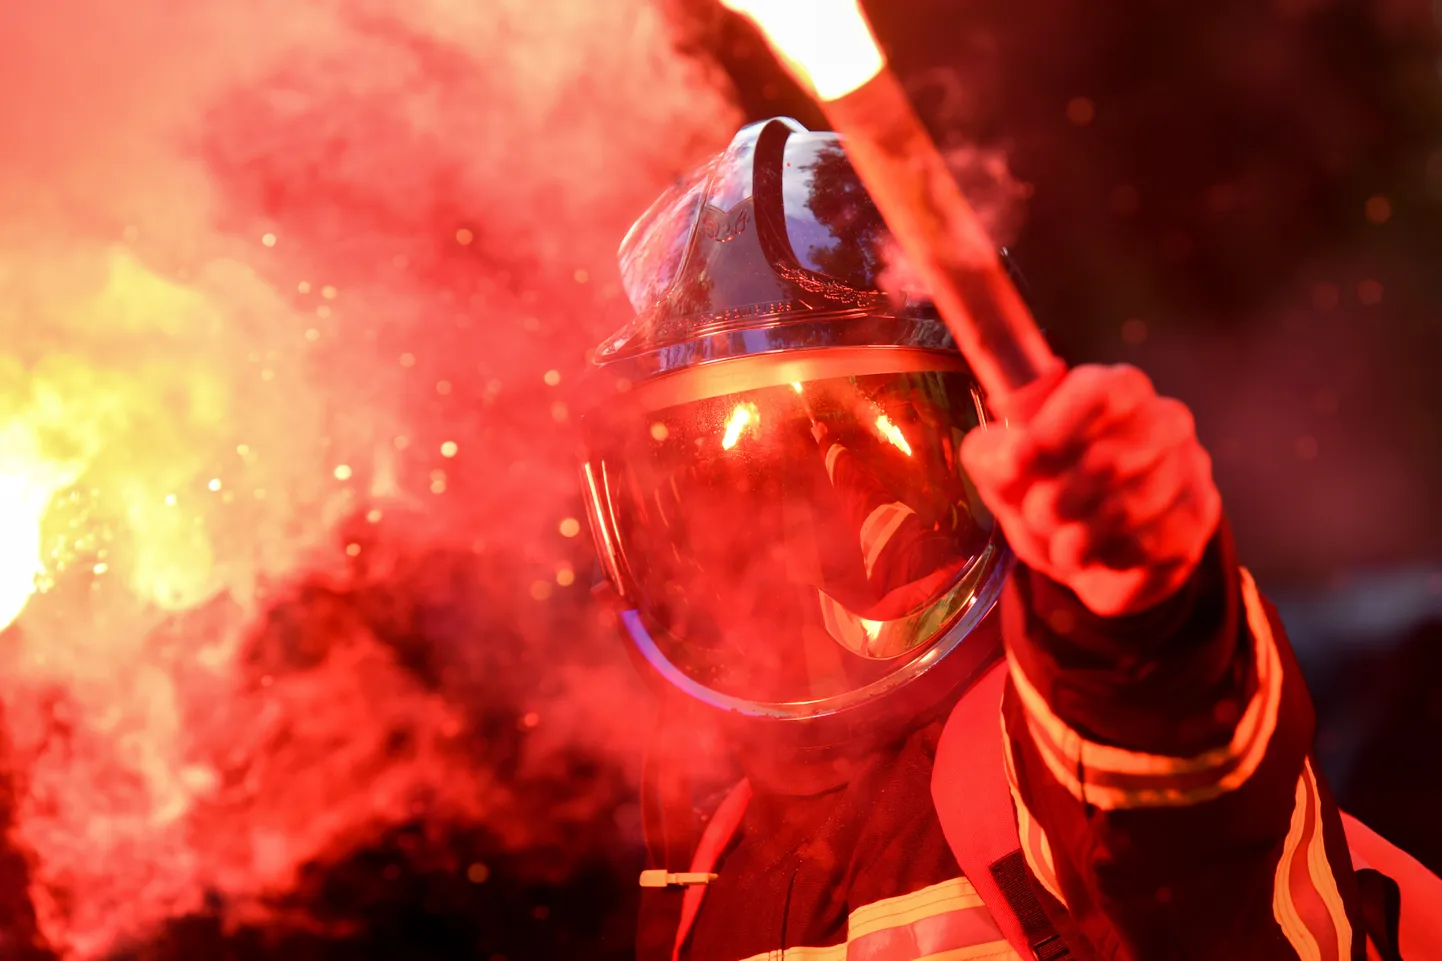 Tuletõrjuja Pariisi meeleavaldusel.